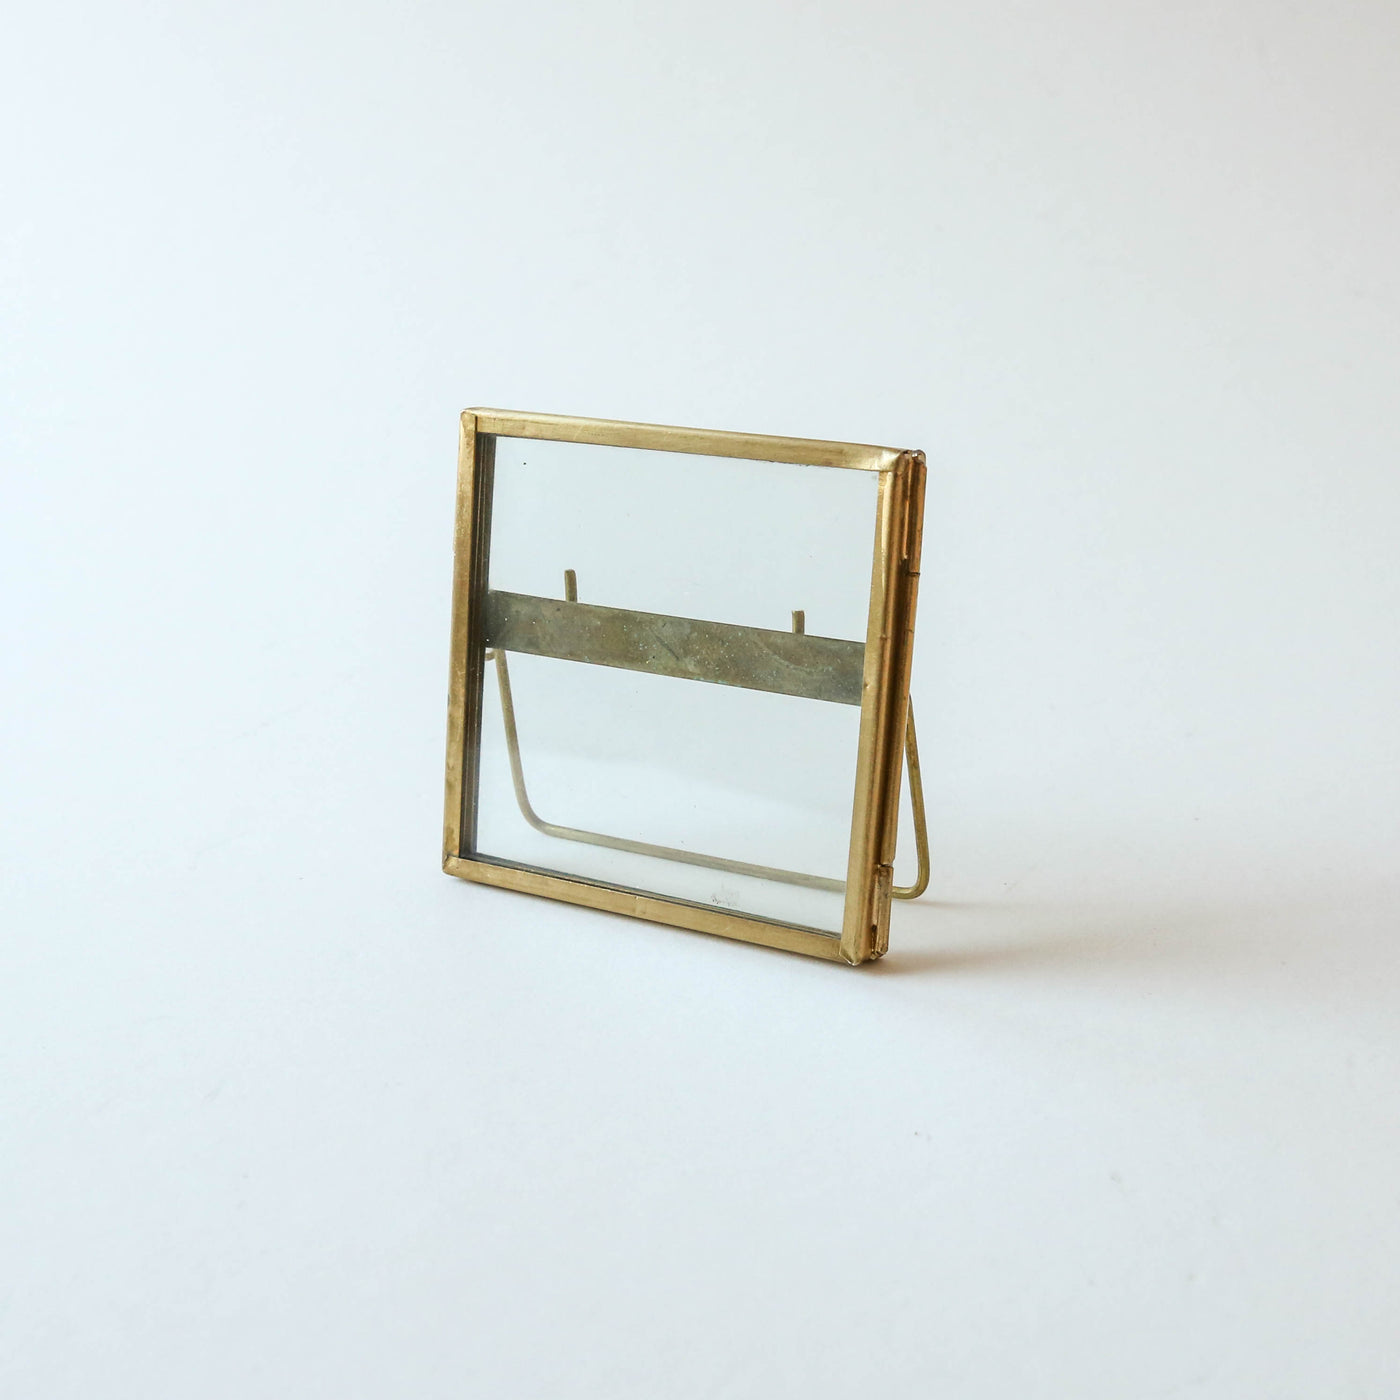 Standing Brass Frame 8 x 8cm